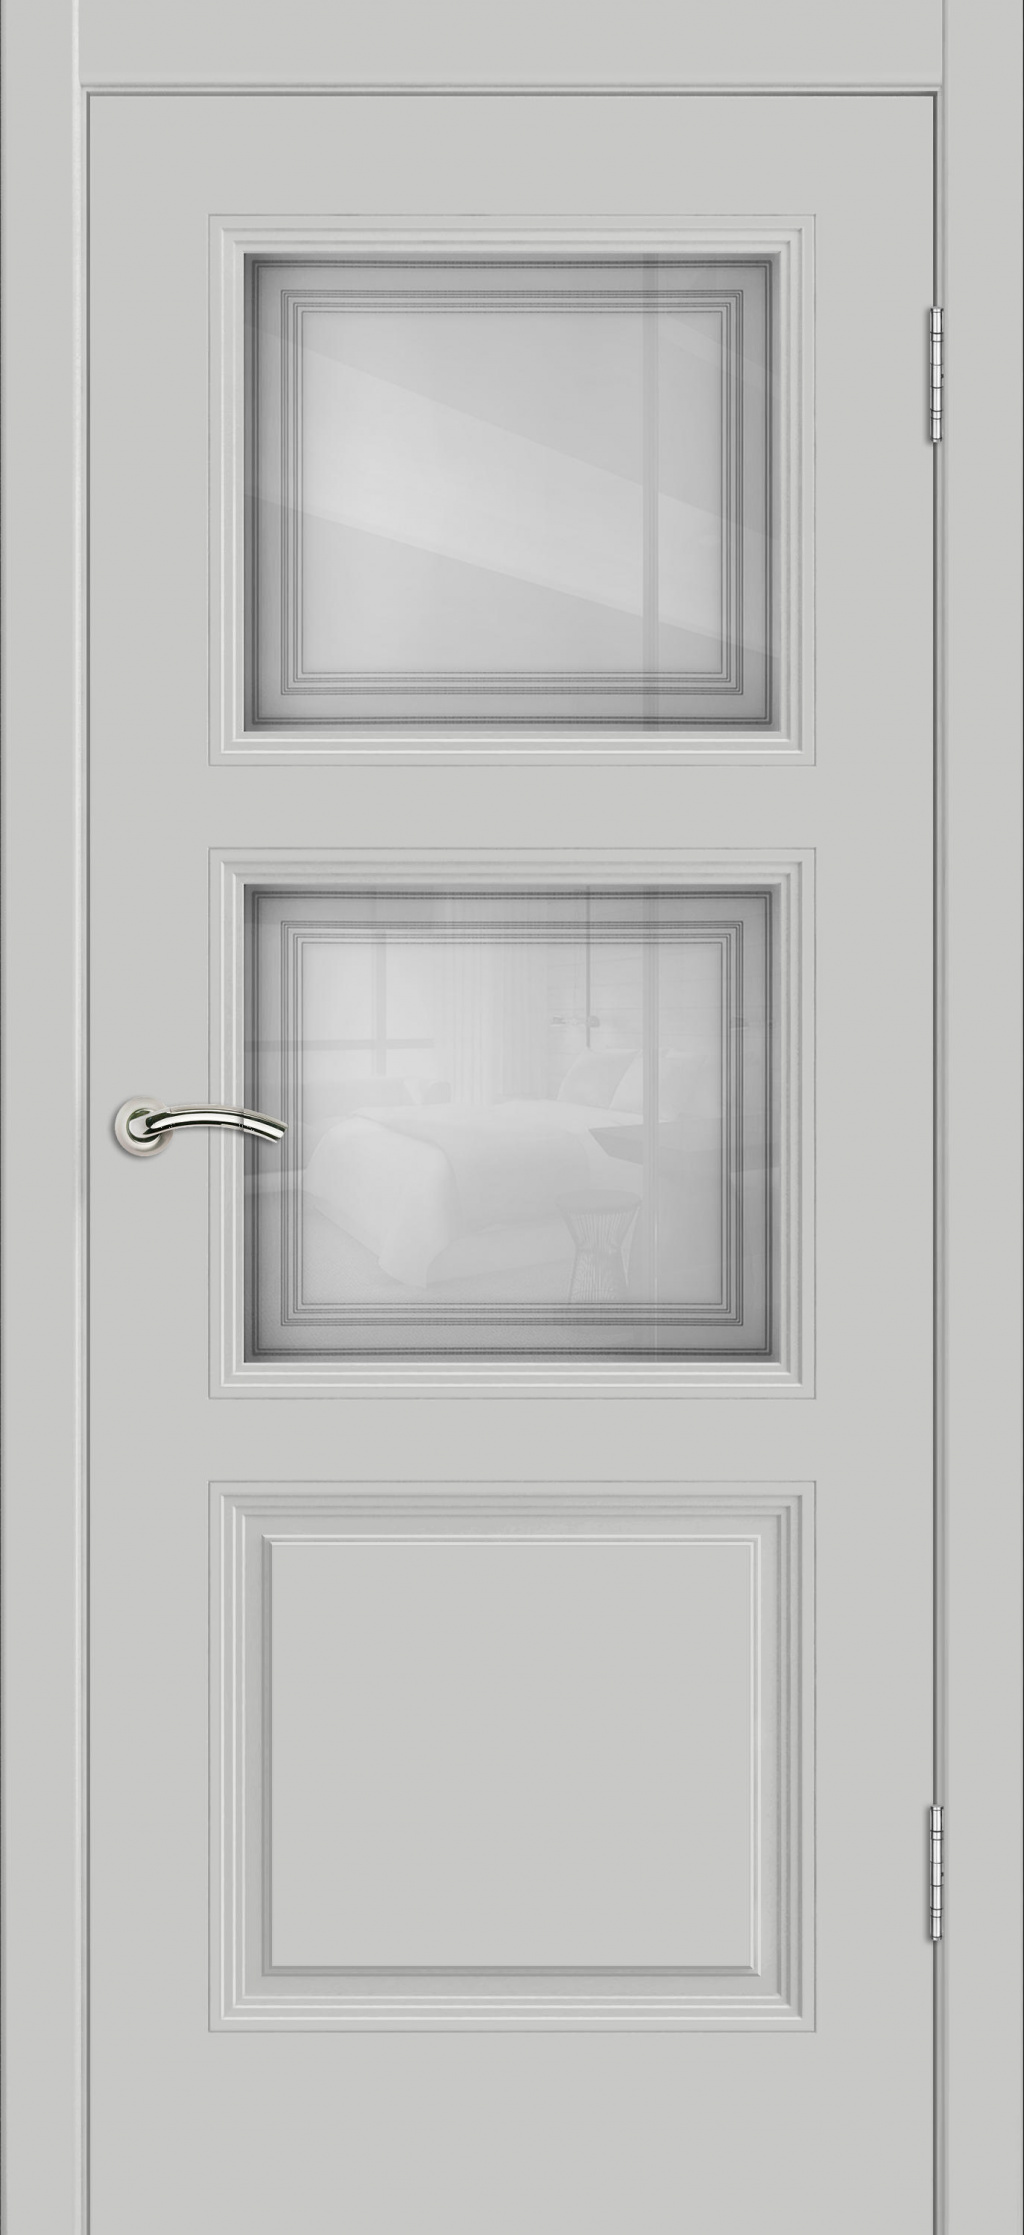 Cordondoor Межкомнатная дверь Vision 3 ПО Узор 1-2, арт. 19310 - фото №3